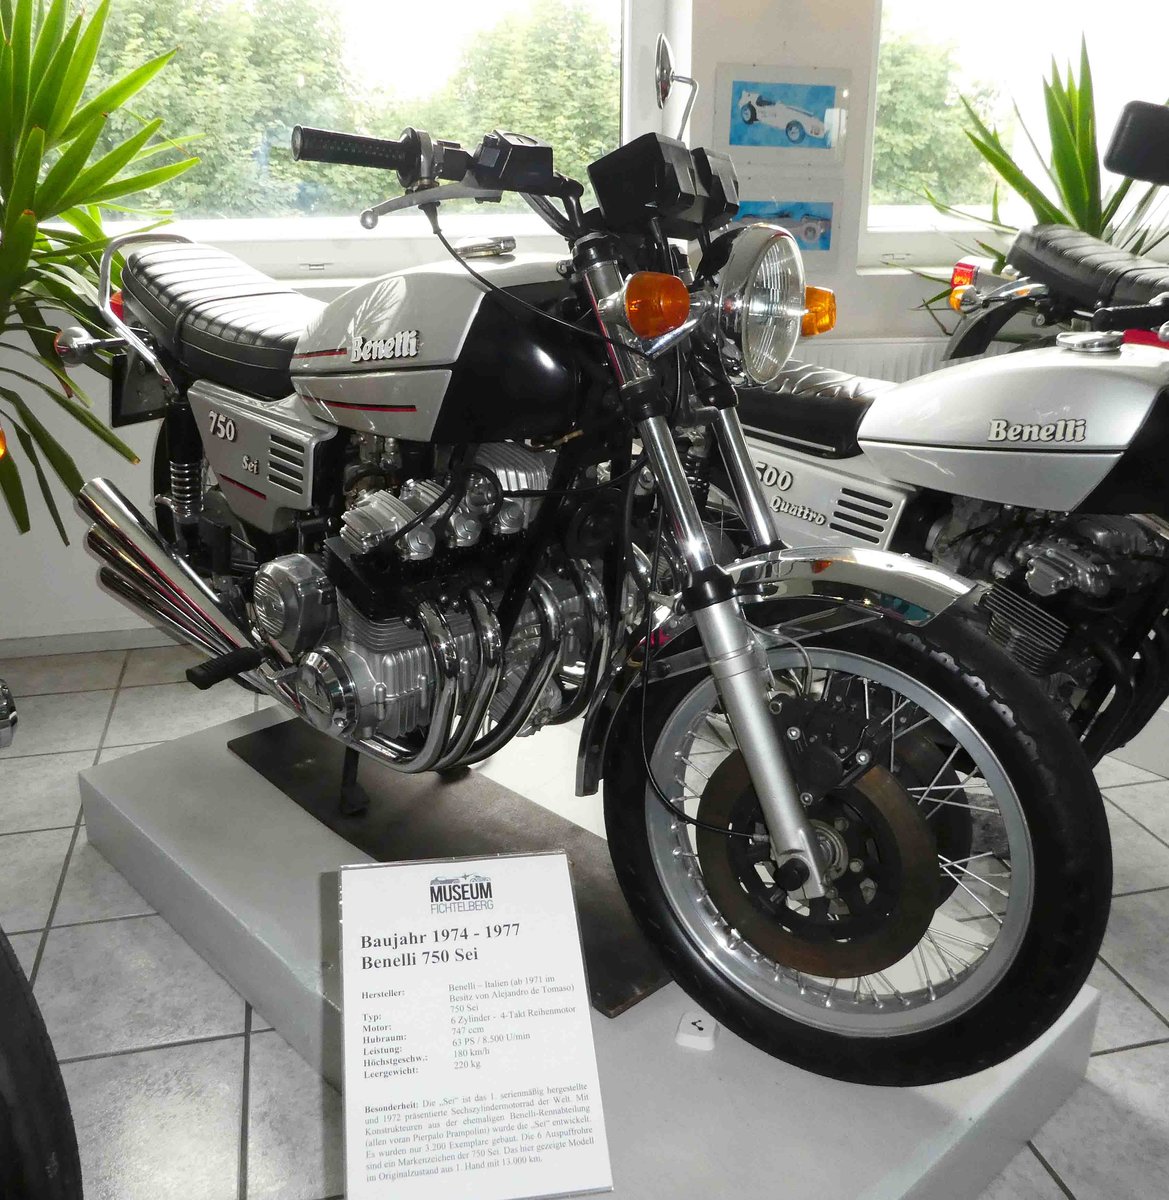 =Benelli 750 Sei, Bauzeit 1974 - 1977, ist das erste weltweit serienmäßig hergestellte 6 Zyl.-Motorrad, präsentiert im Deutschen Automobilmuseum Fichtelberg im Juli 2018
